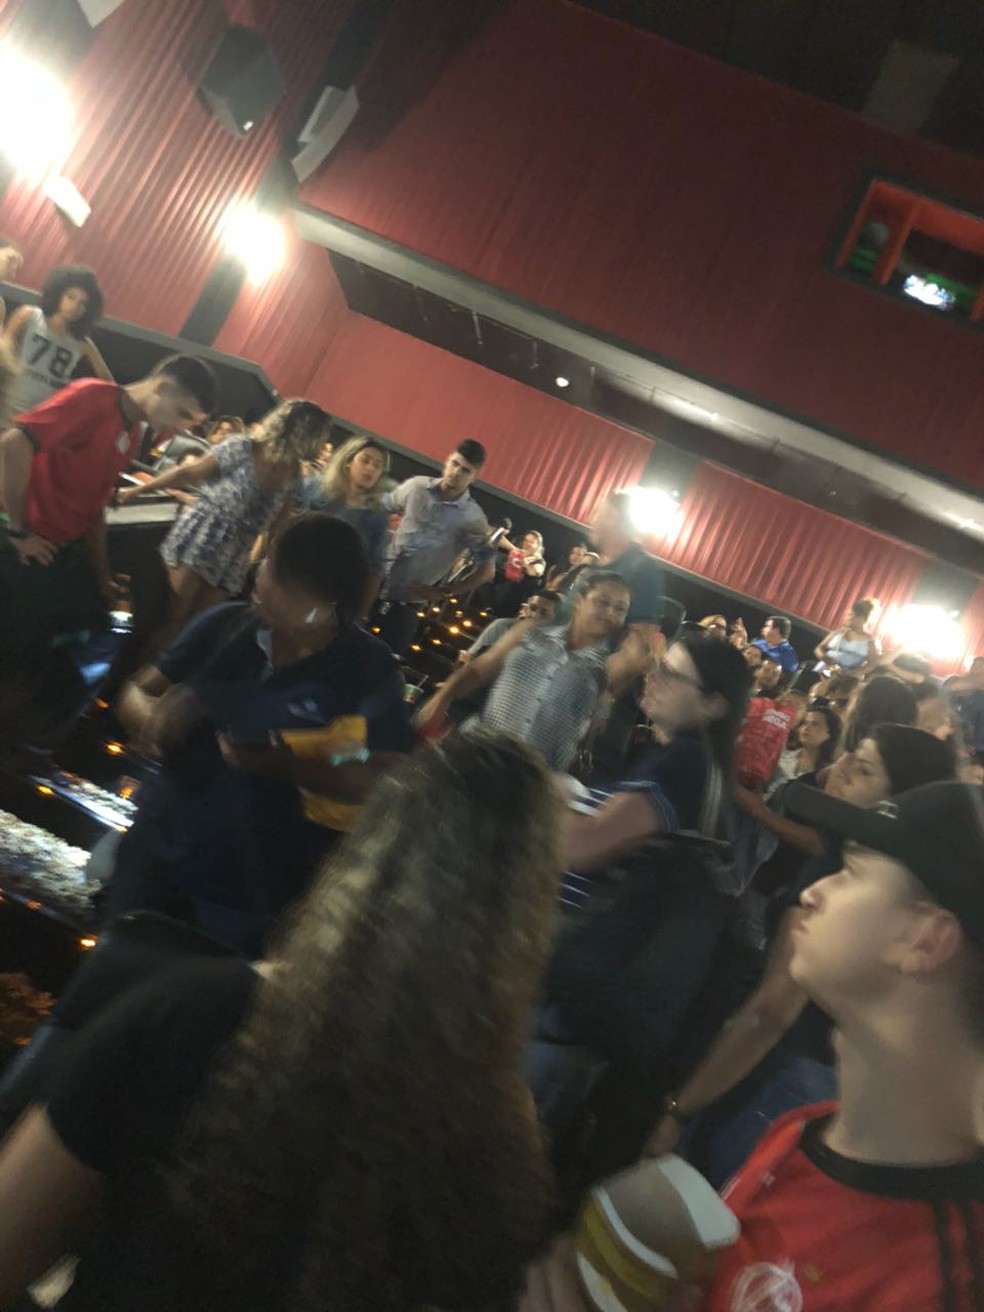 Sessão foi interrompida por causa de briga em cinema de Vitória (Foto: Aline Souza/Arquivo Pessoal)